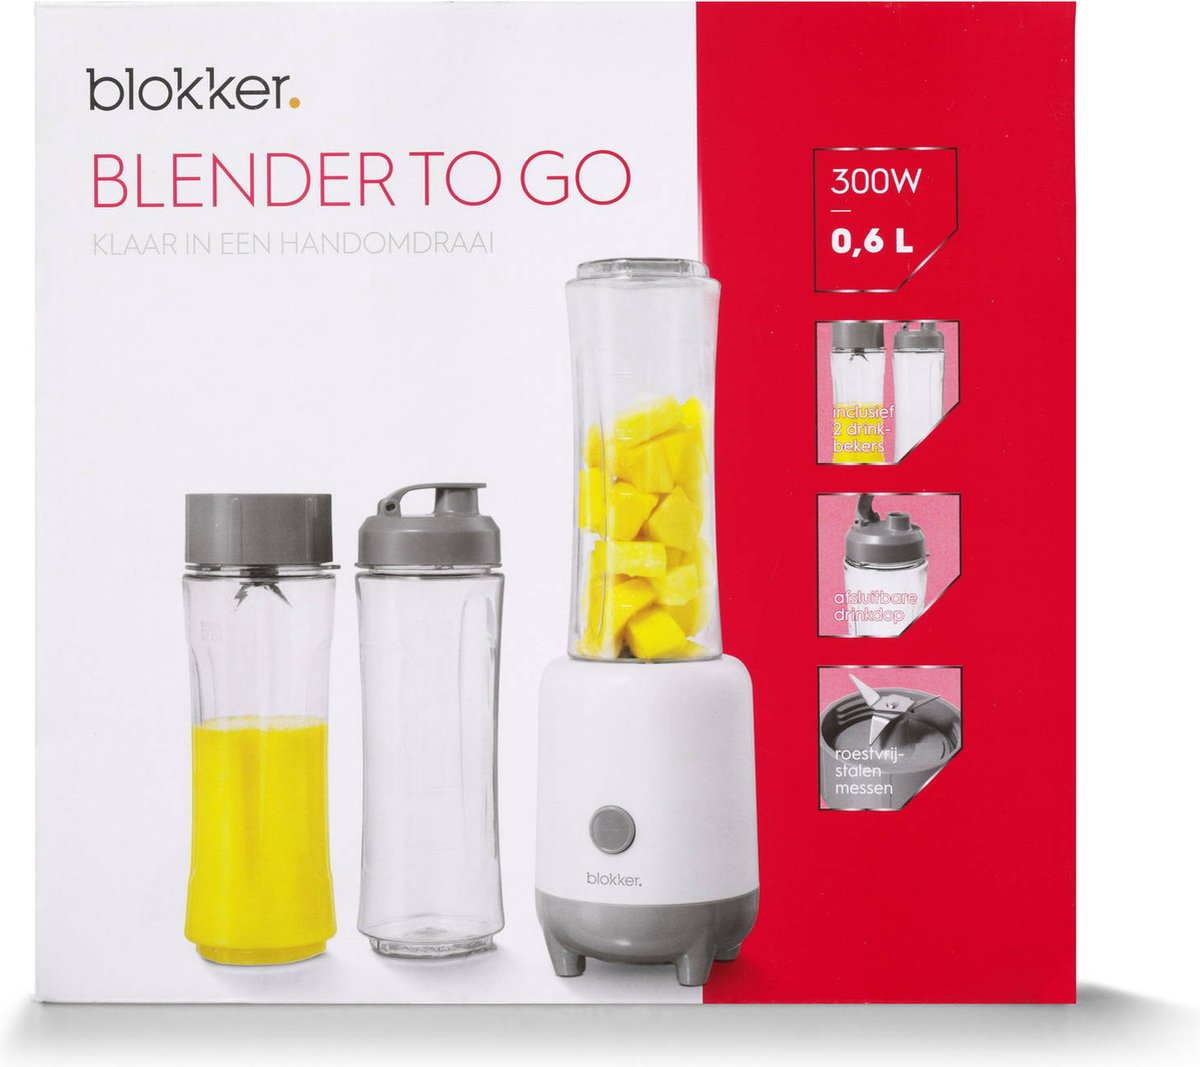 Blokker Blender To-Go - Smoothie Maker 0,6L - Wit | bol.com